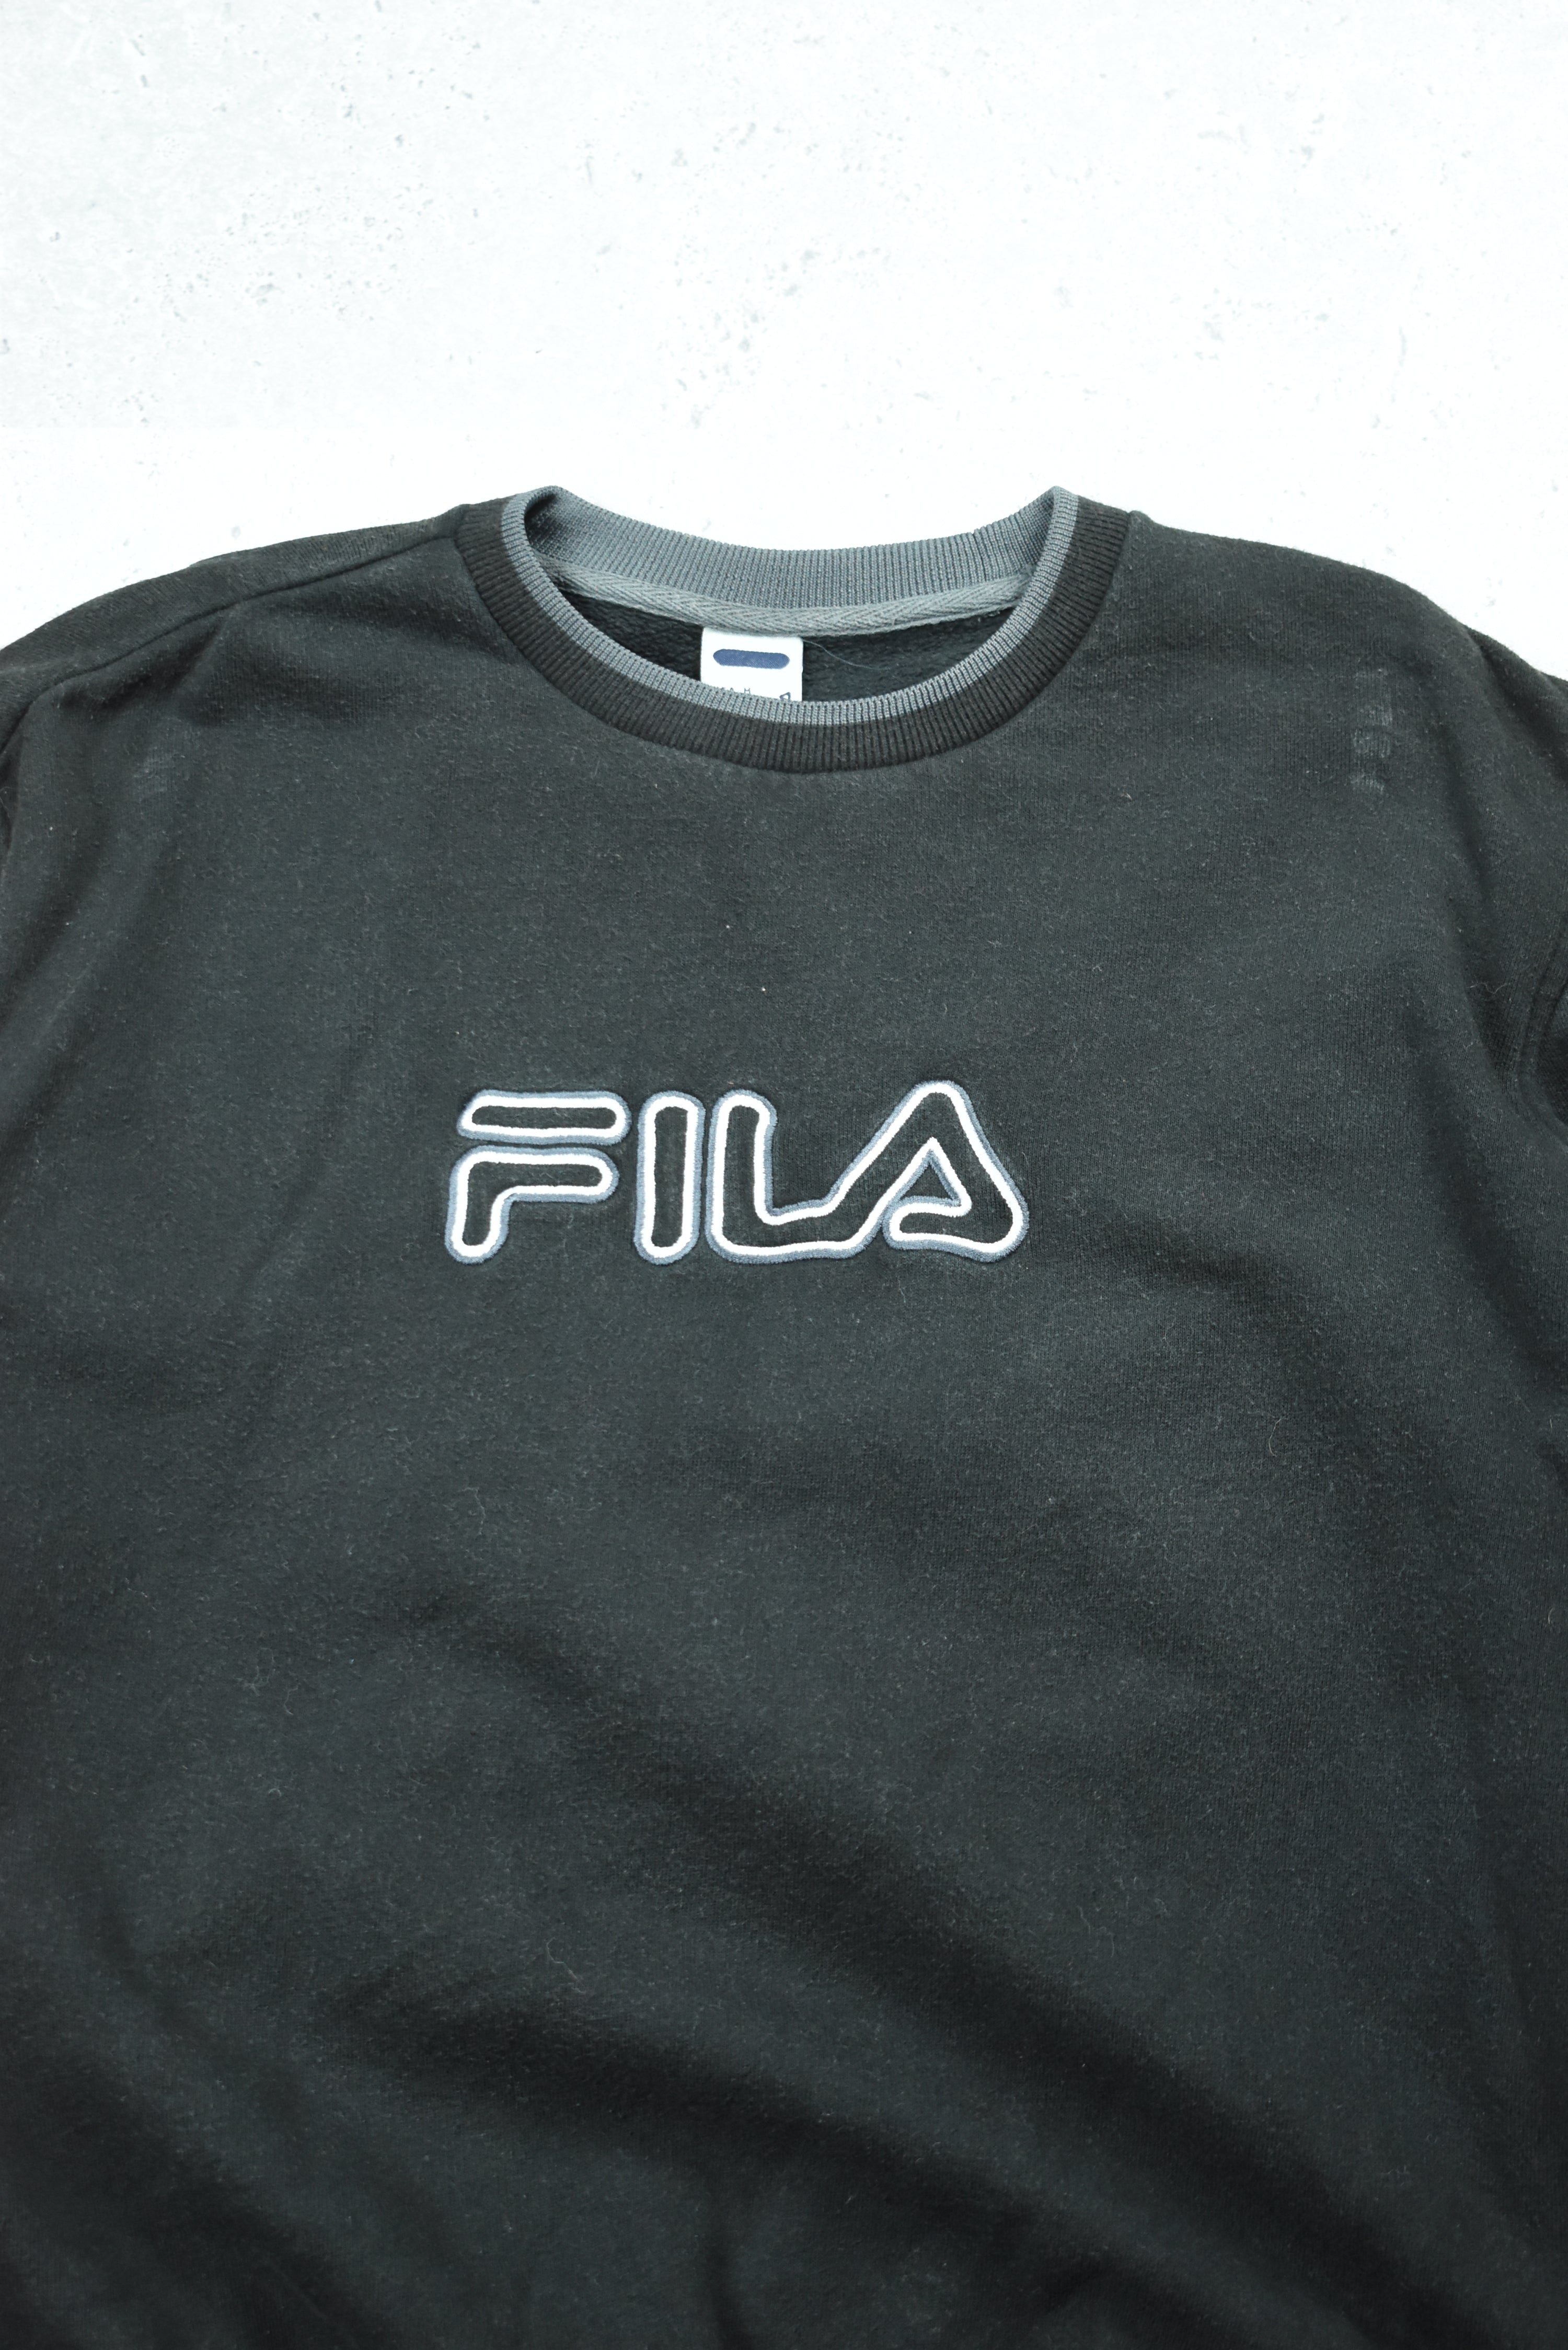 Vintage Fila Embroidery Logo Sweatshirt Medium